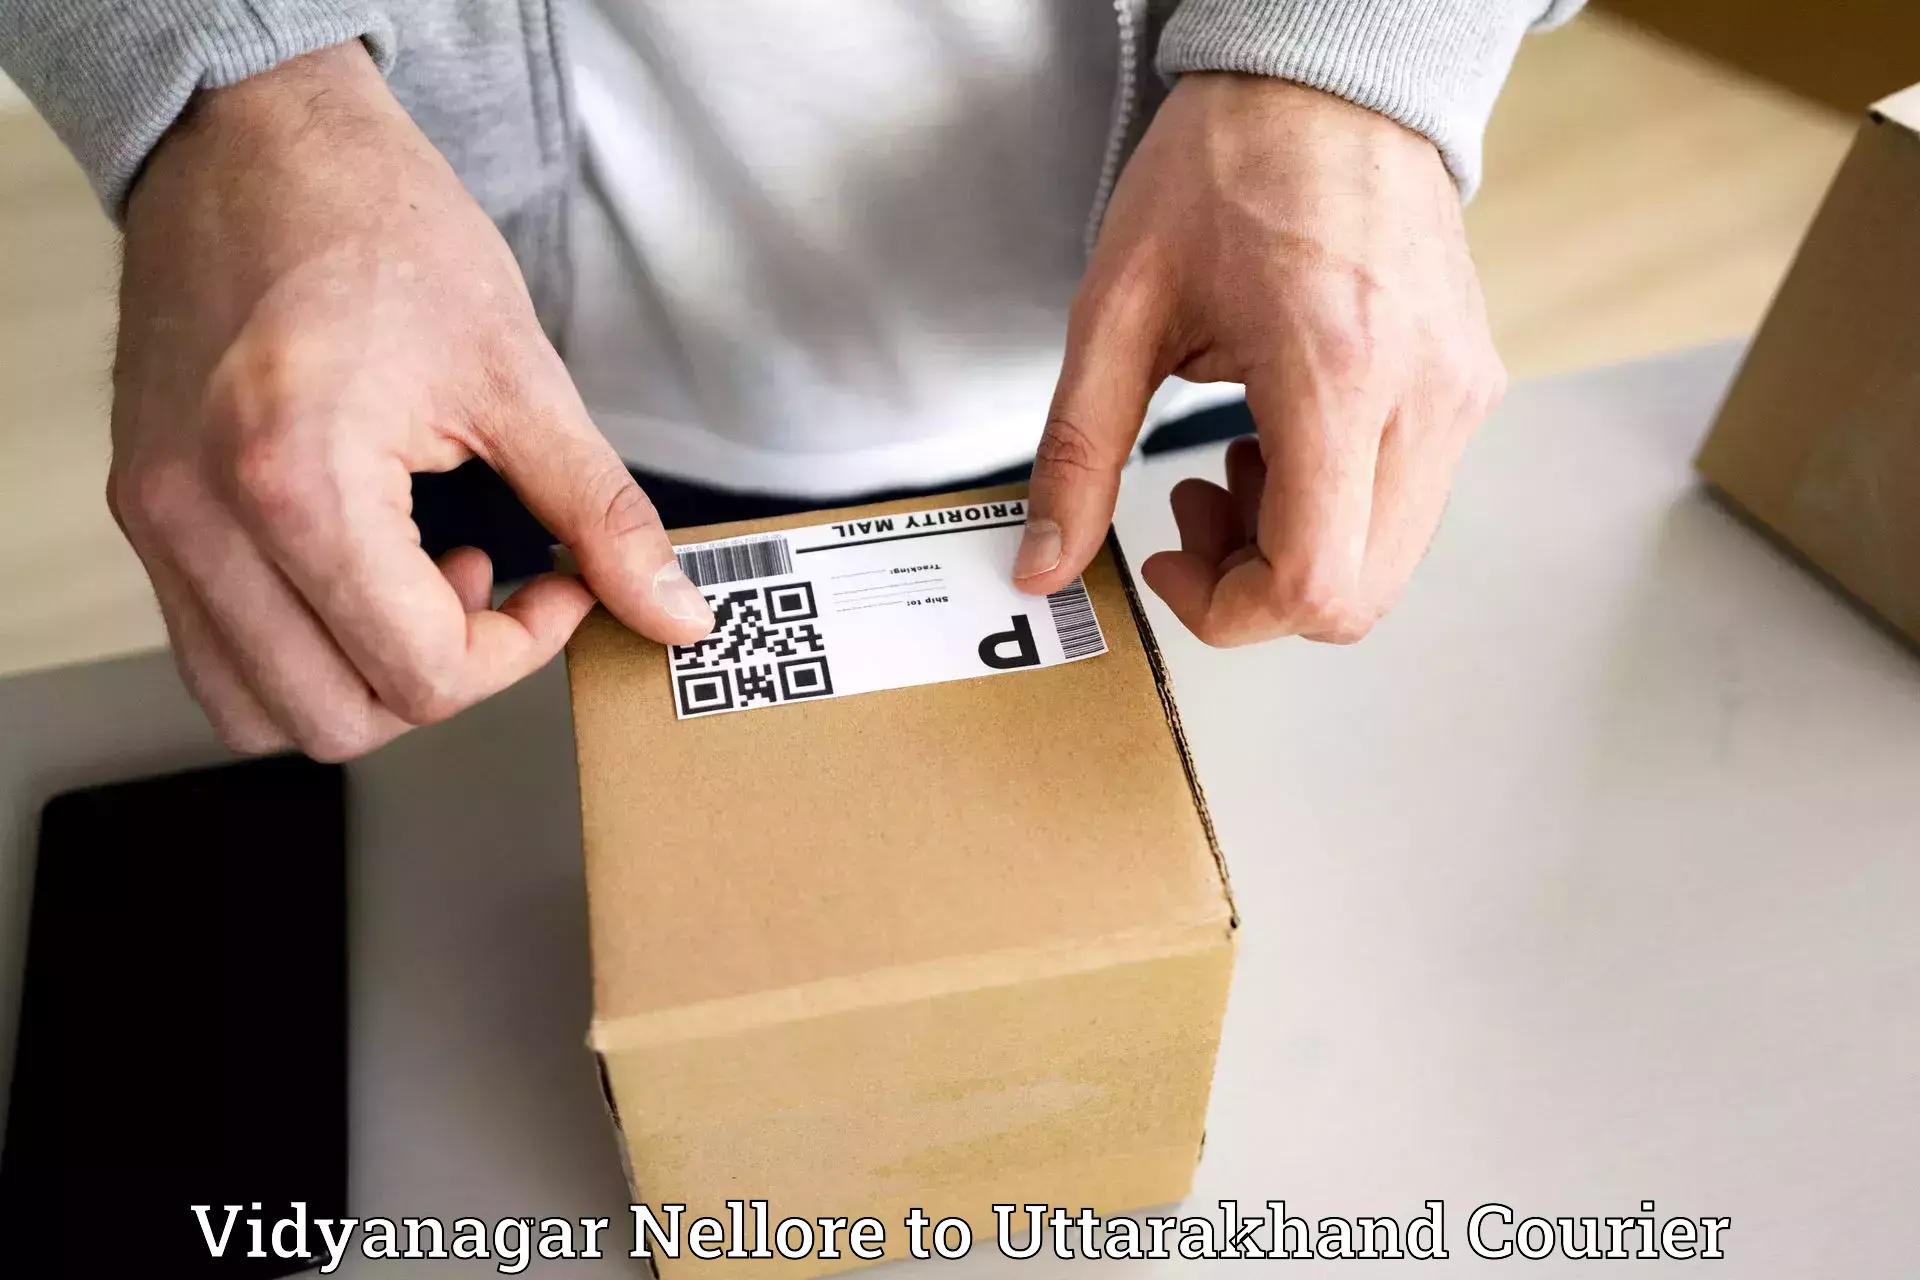 Urgent courier needs Vidyanagar Nellore to Pauri